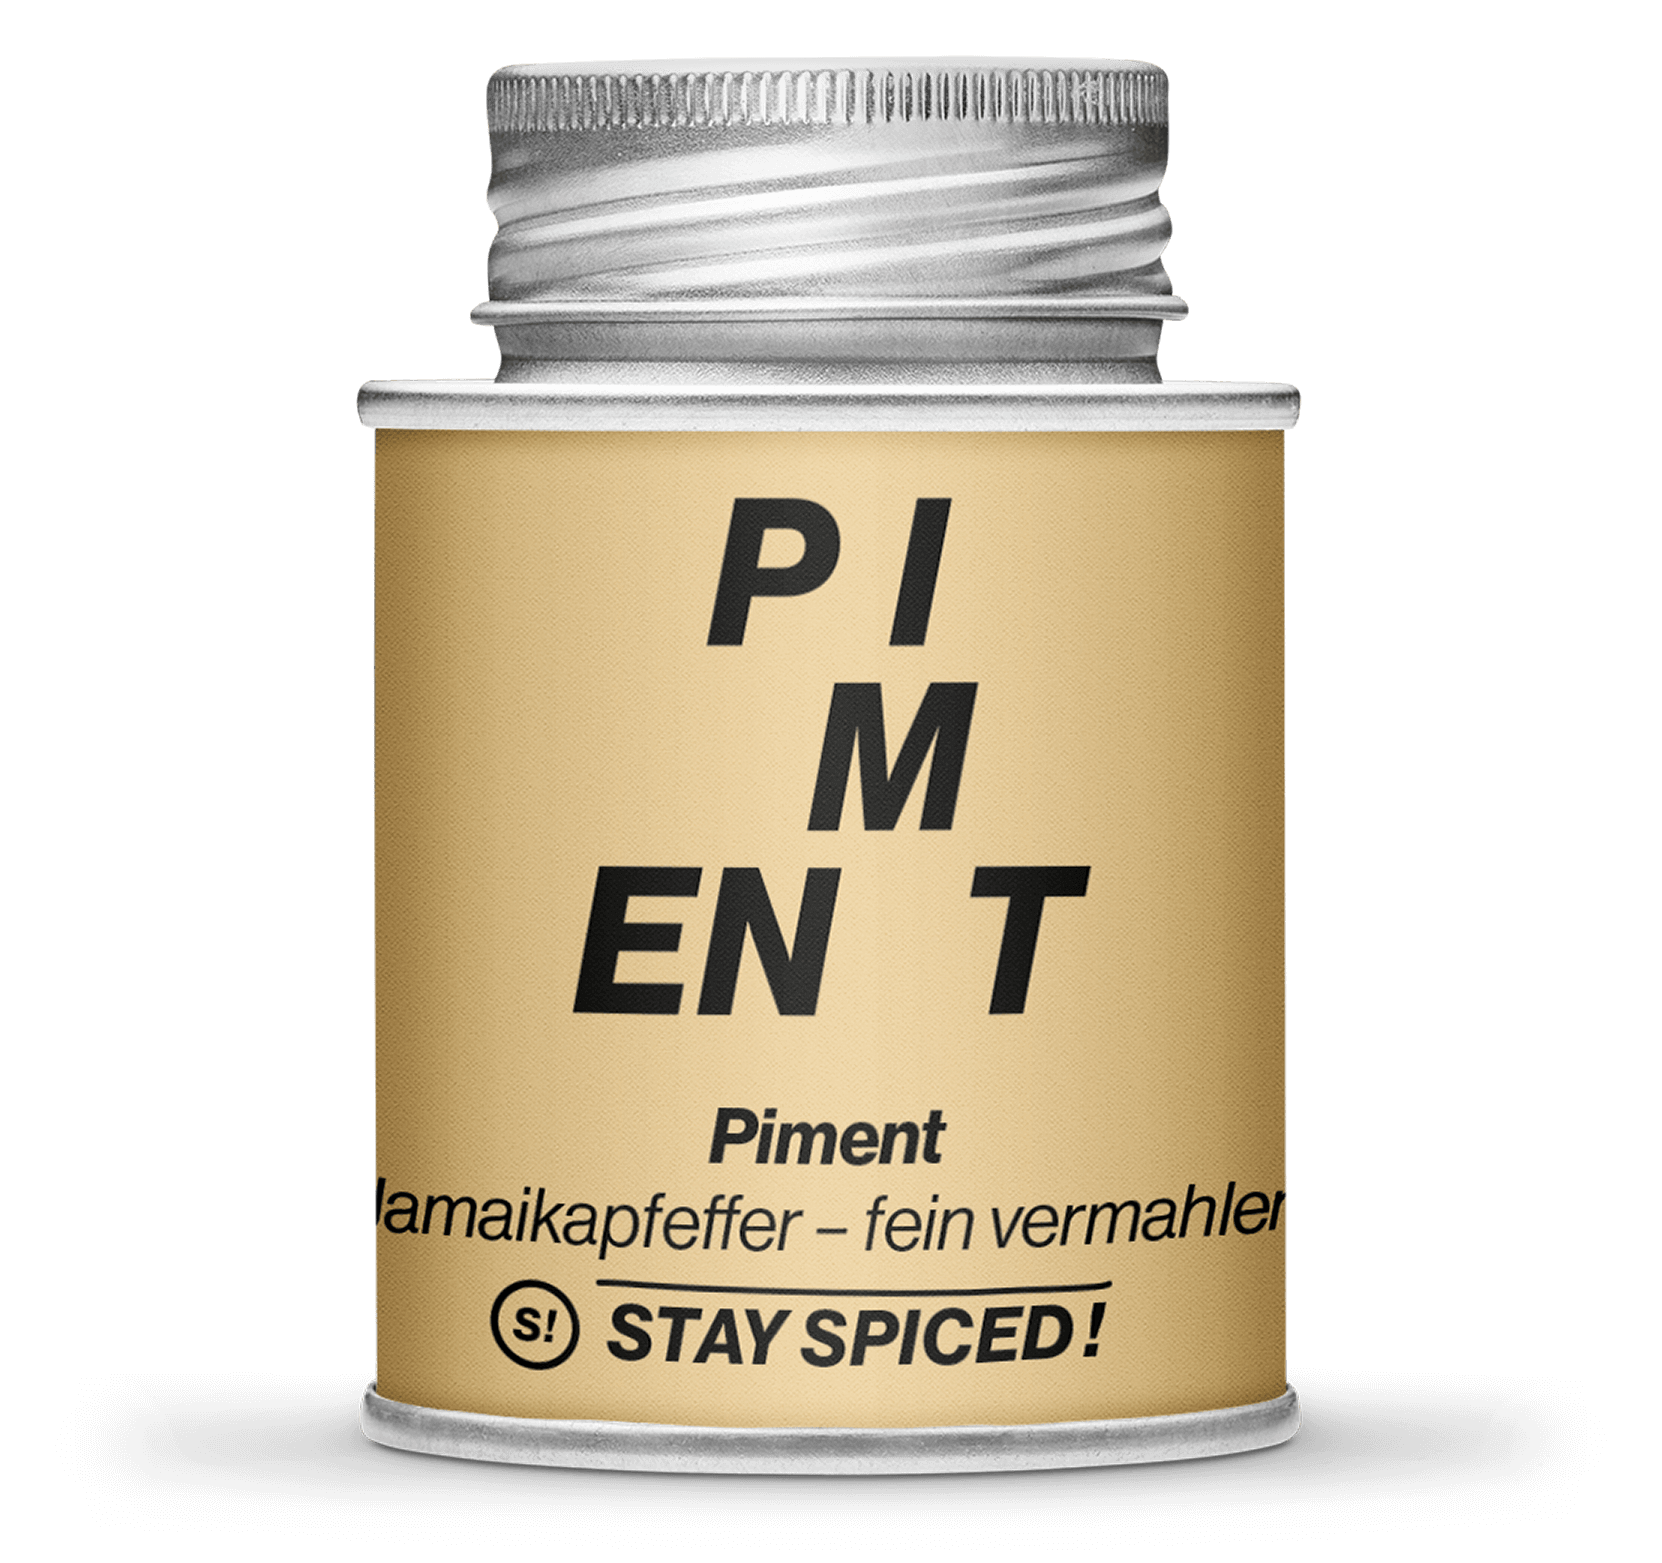 Piment - Neugewürz (Jamaicapfeffer) - gemahlen